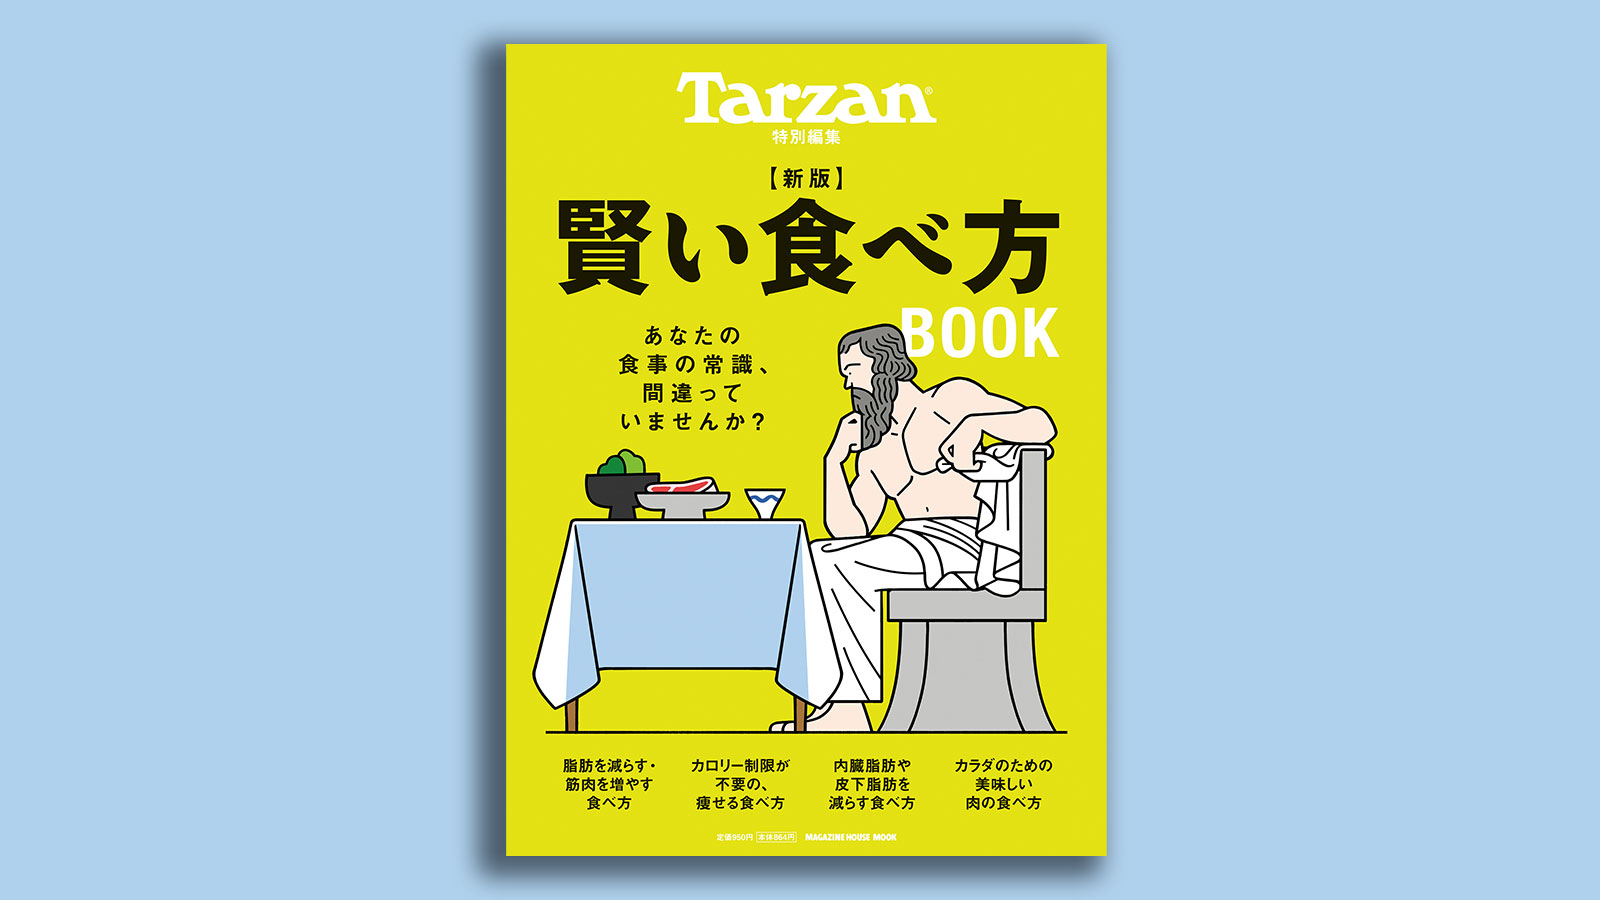 ターザン特別編集『新版 賢い食べ方 BOOK』表紙